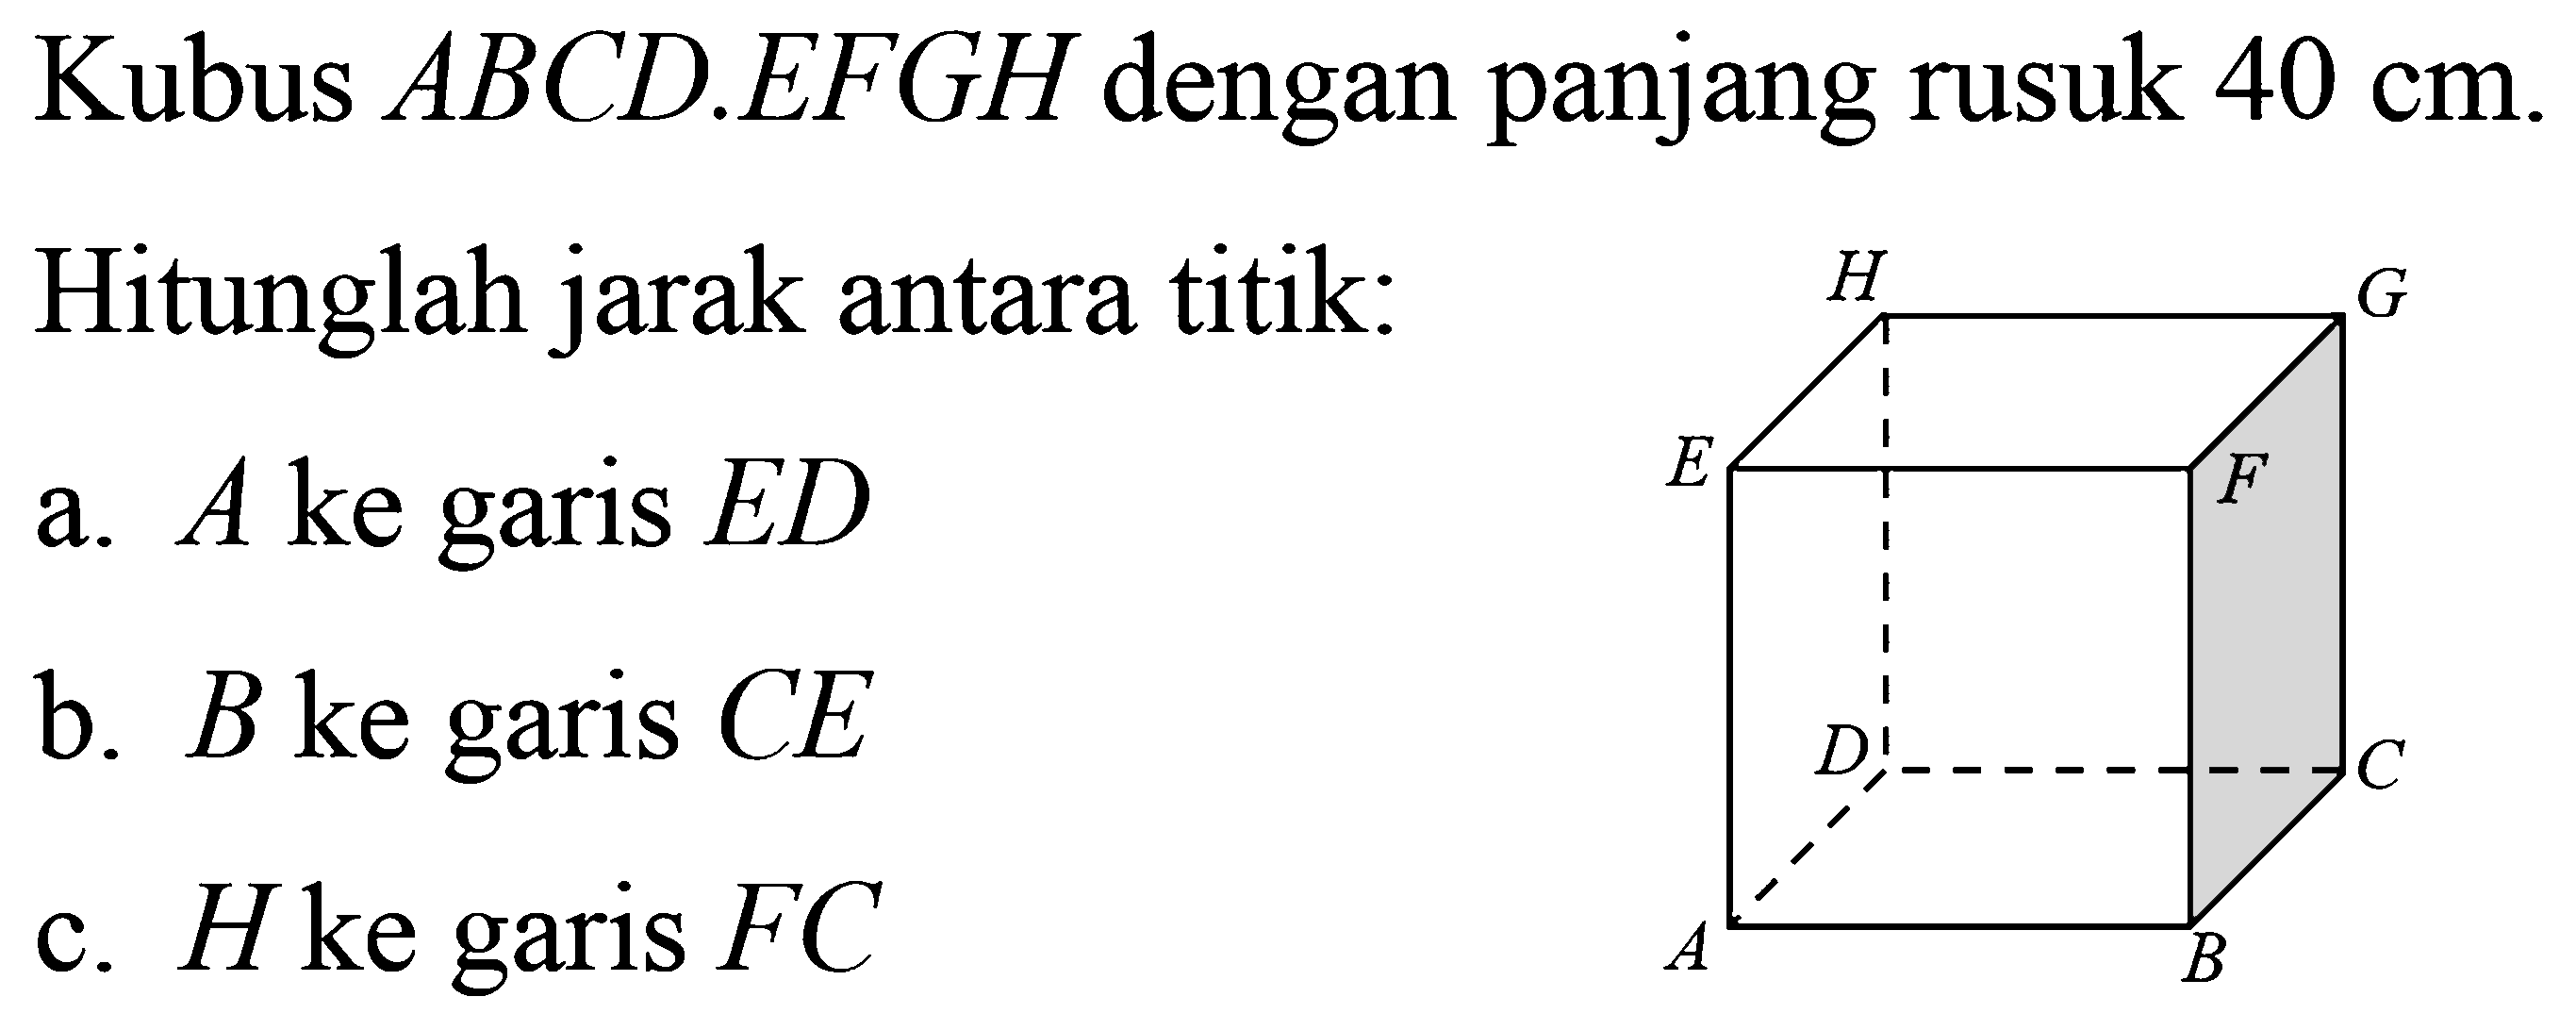 Kubus ABCD.EFGH dengan panjang rusuk 40 cm. Hitunglah jarak antara titik: a. A ke garis ED b. B ke garis CE c. H ke garis FC ABCDEFGH